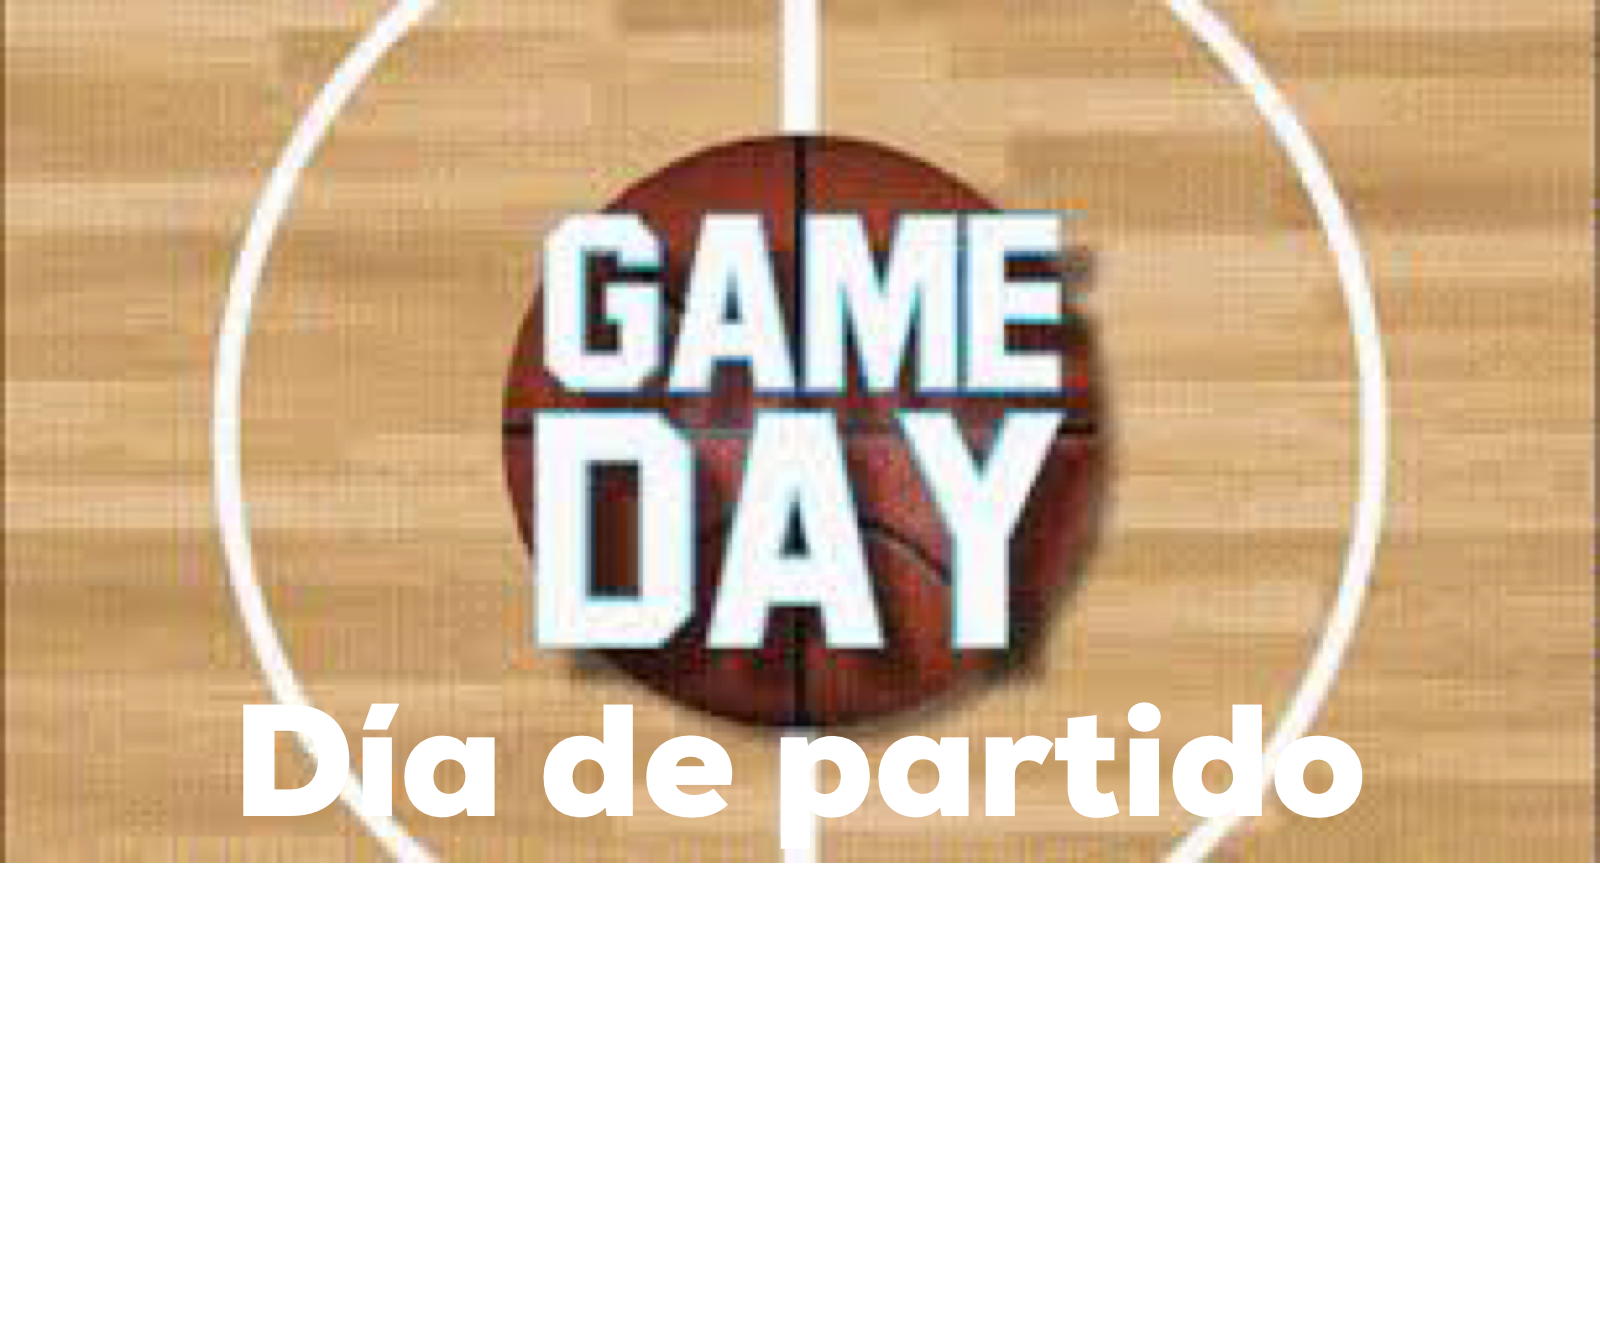 Fondo de Armario. Game Day, Día de Partido. Por Carlos Ruf Osola.